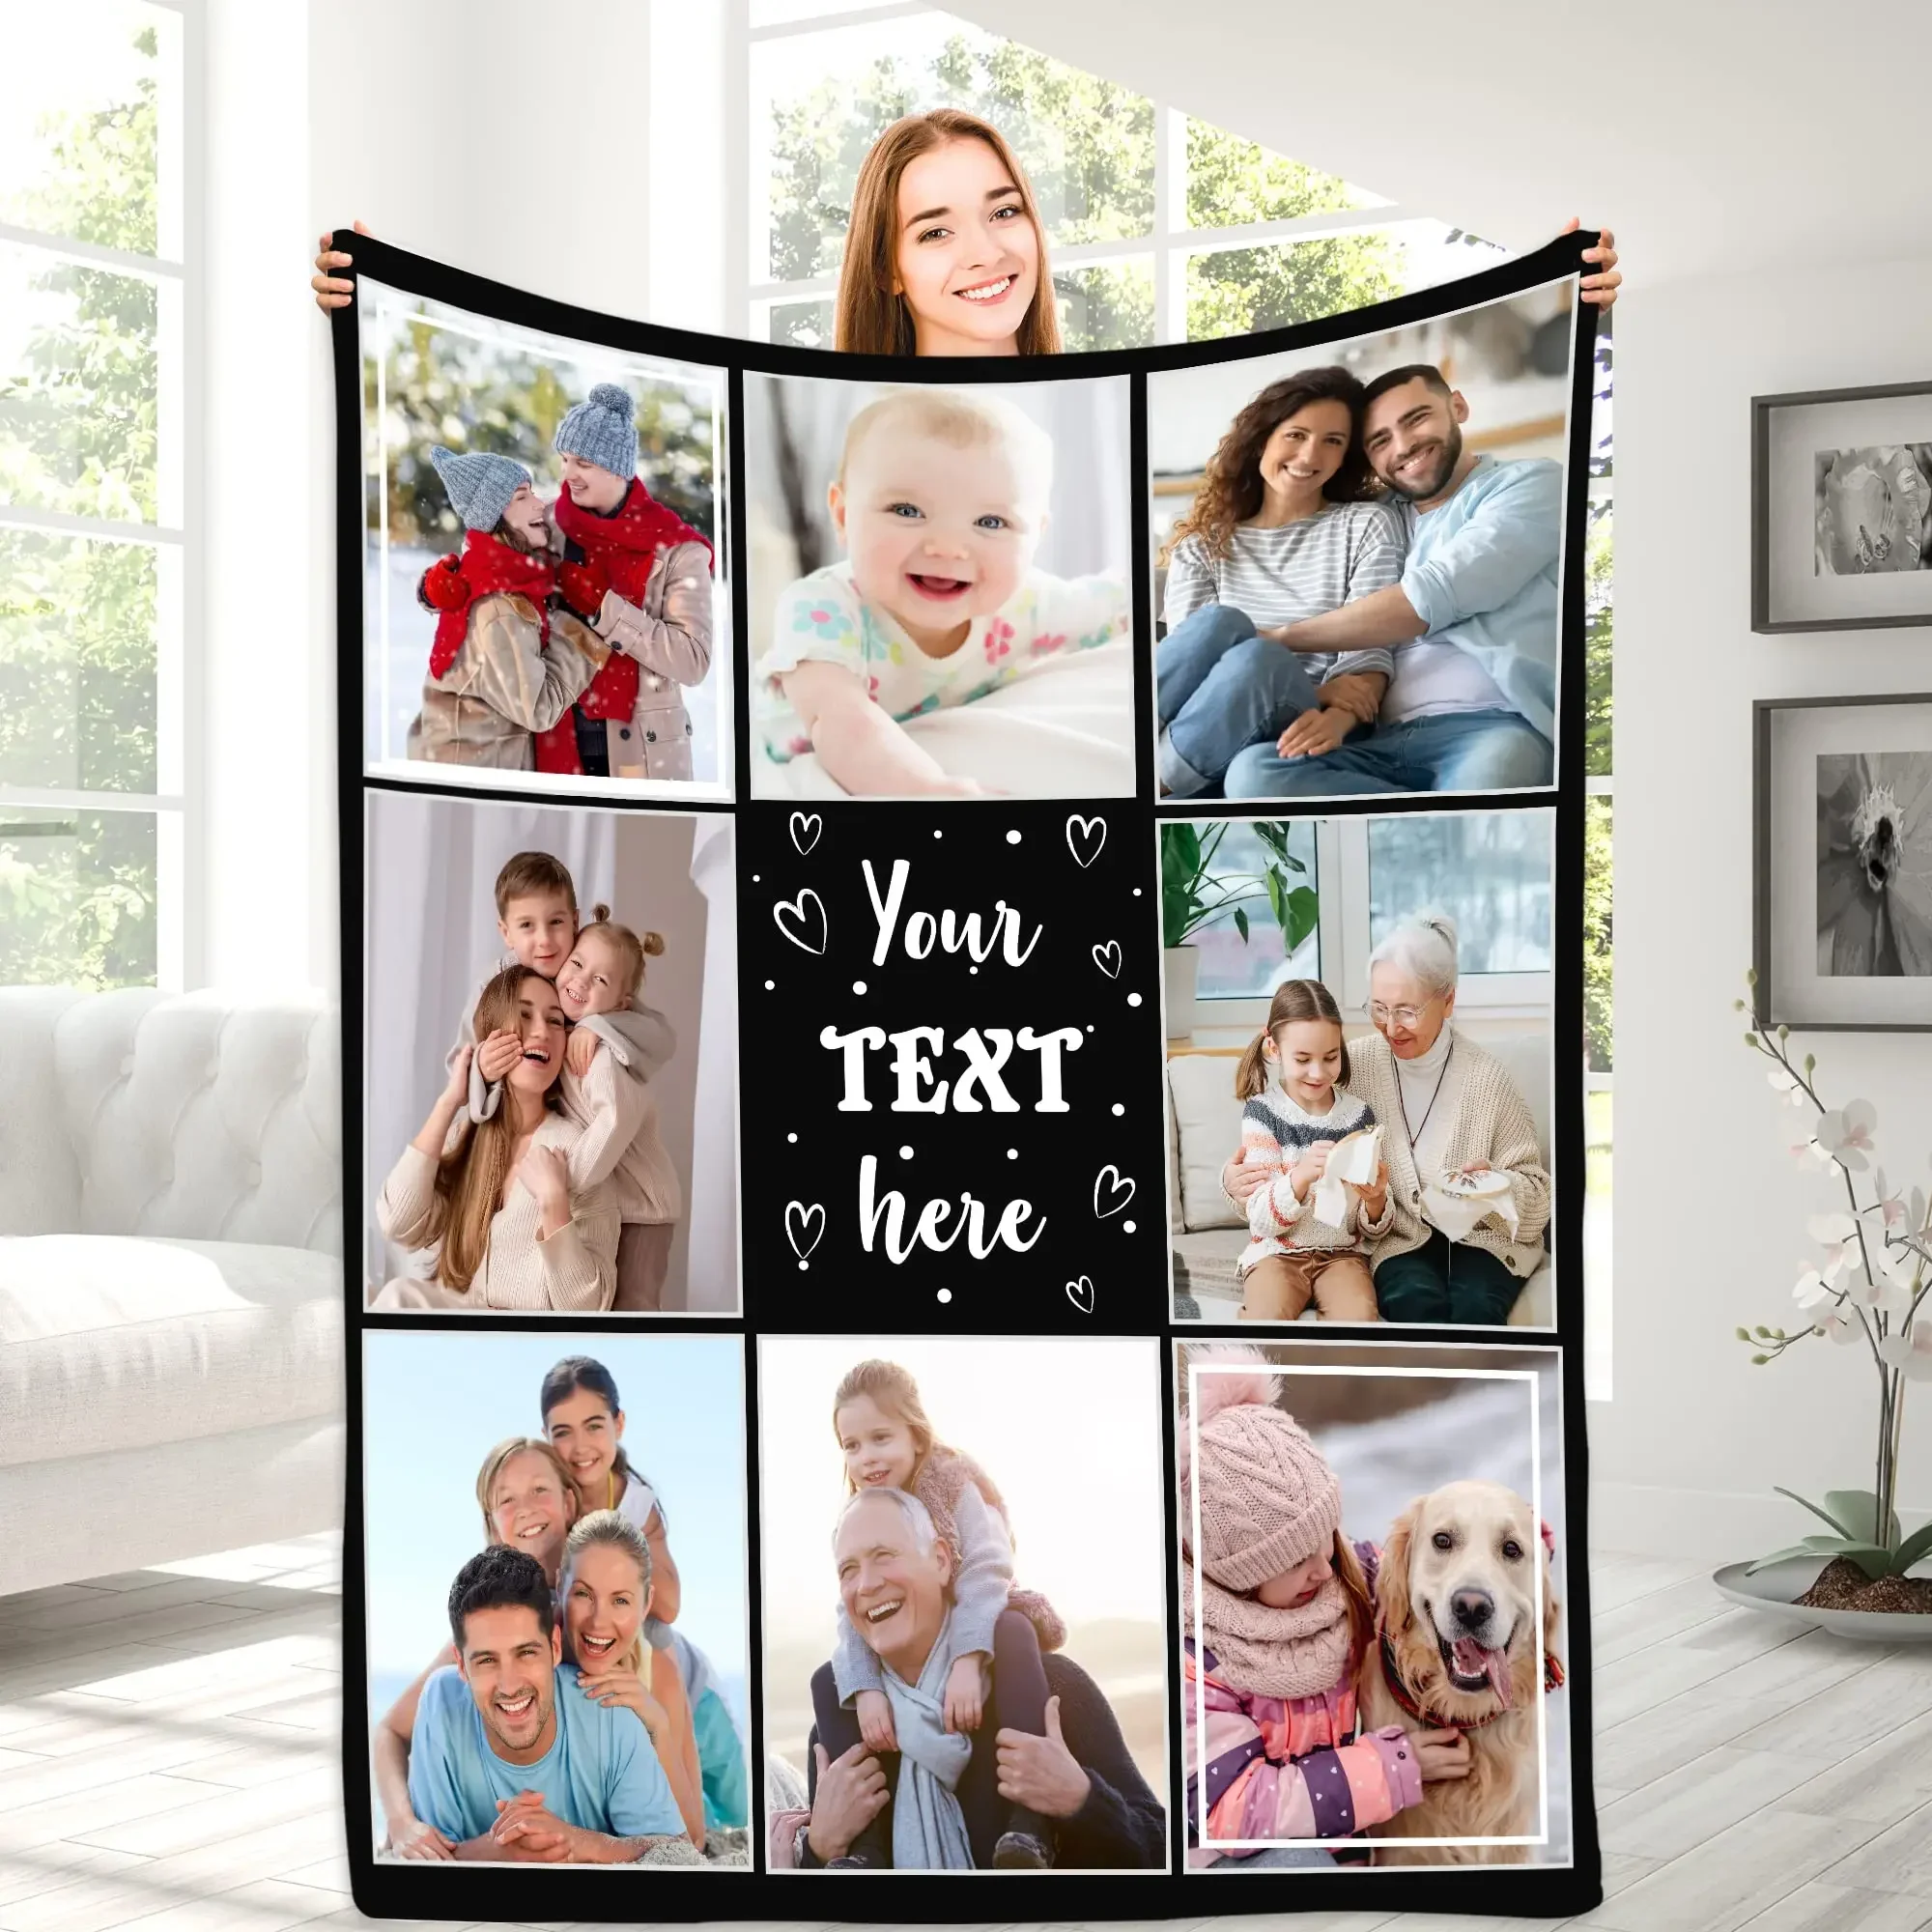 

Индивидуальное одеяло с текстом, фотоколлажем, персонализированные одеяла с рисунками, сувениры, подарки, индивидуальное одеяло для семьи, мамы, папы